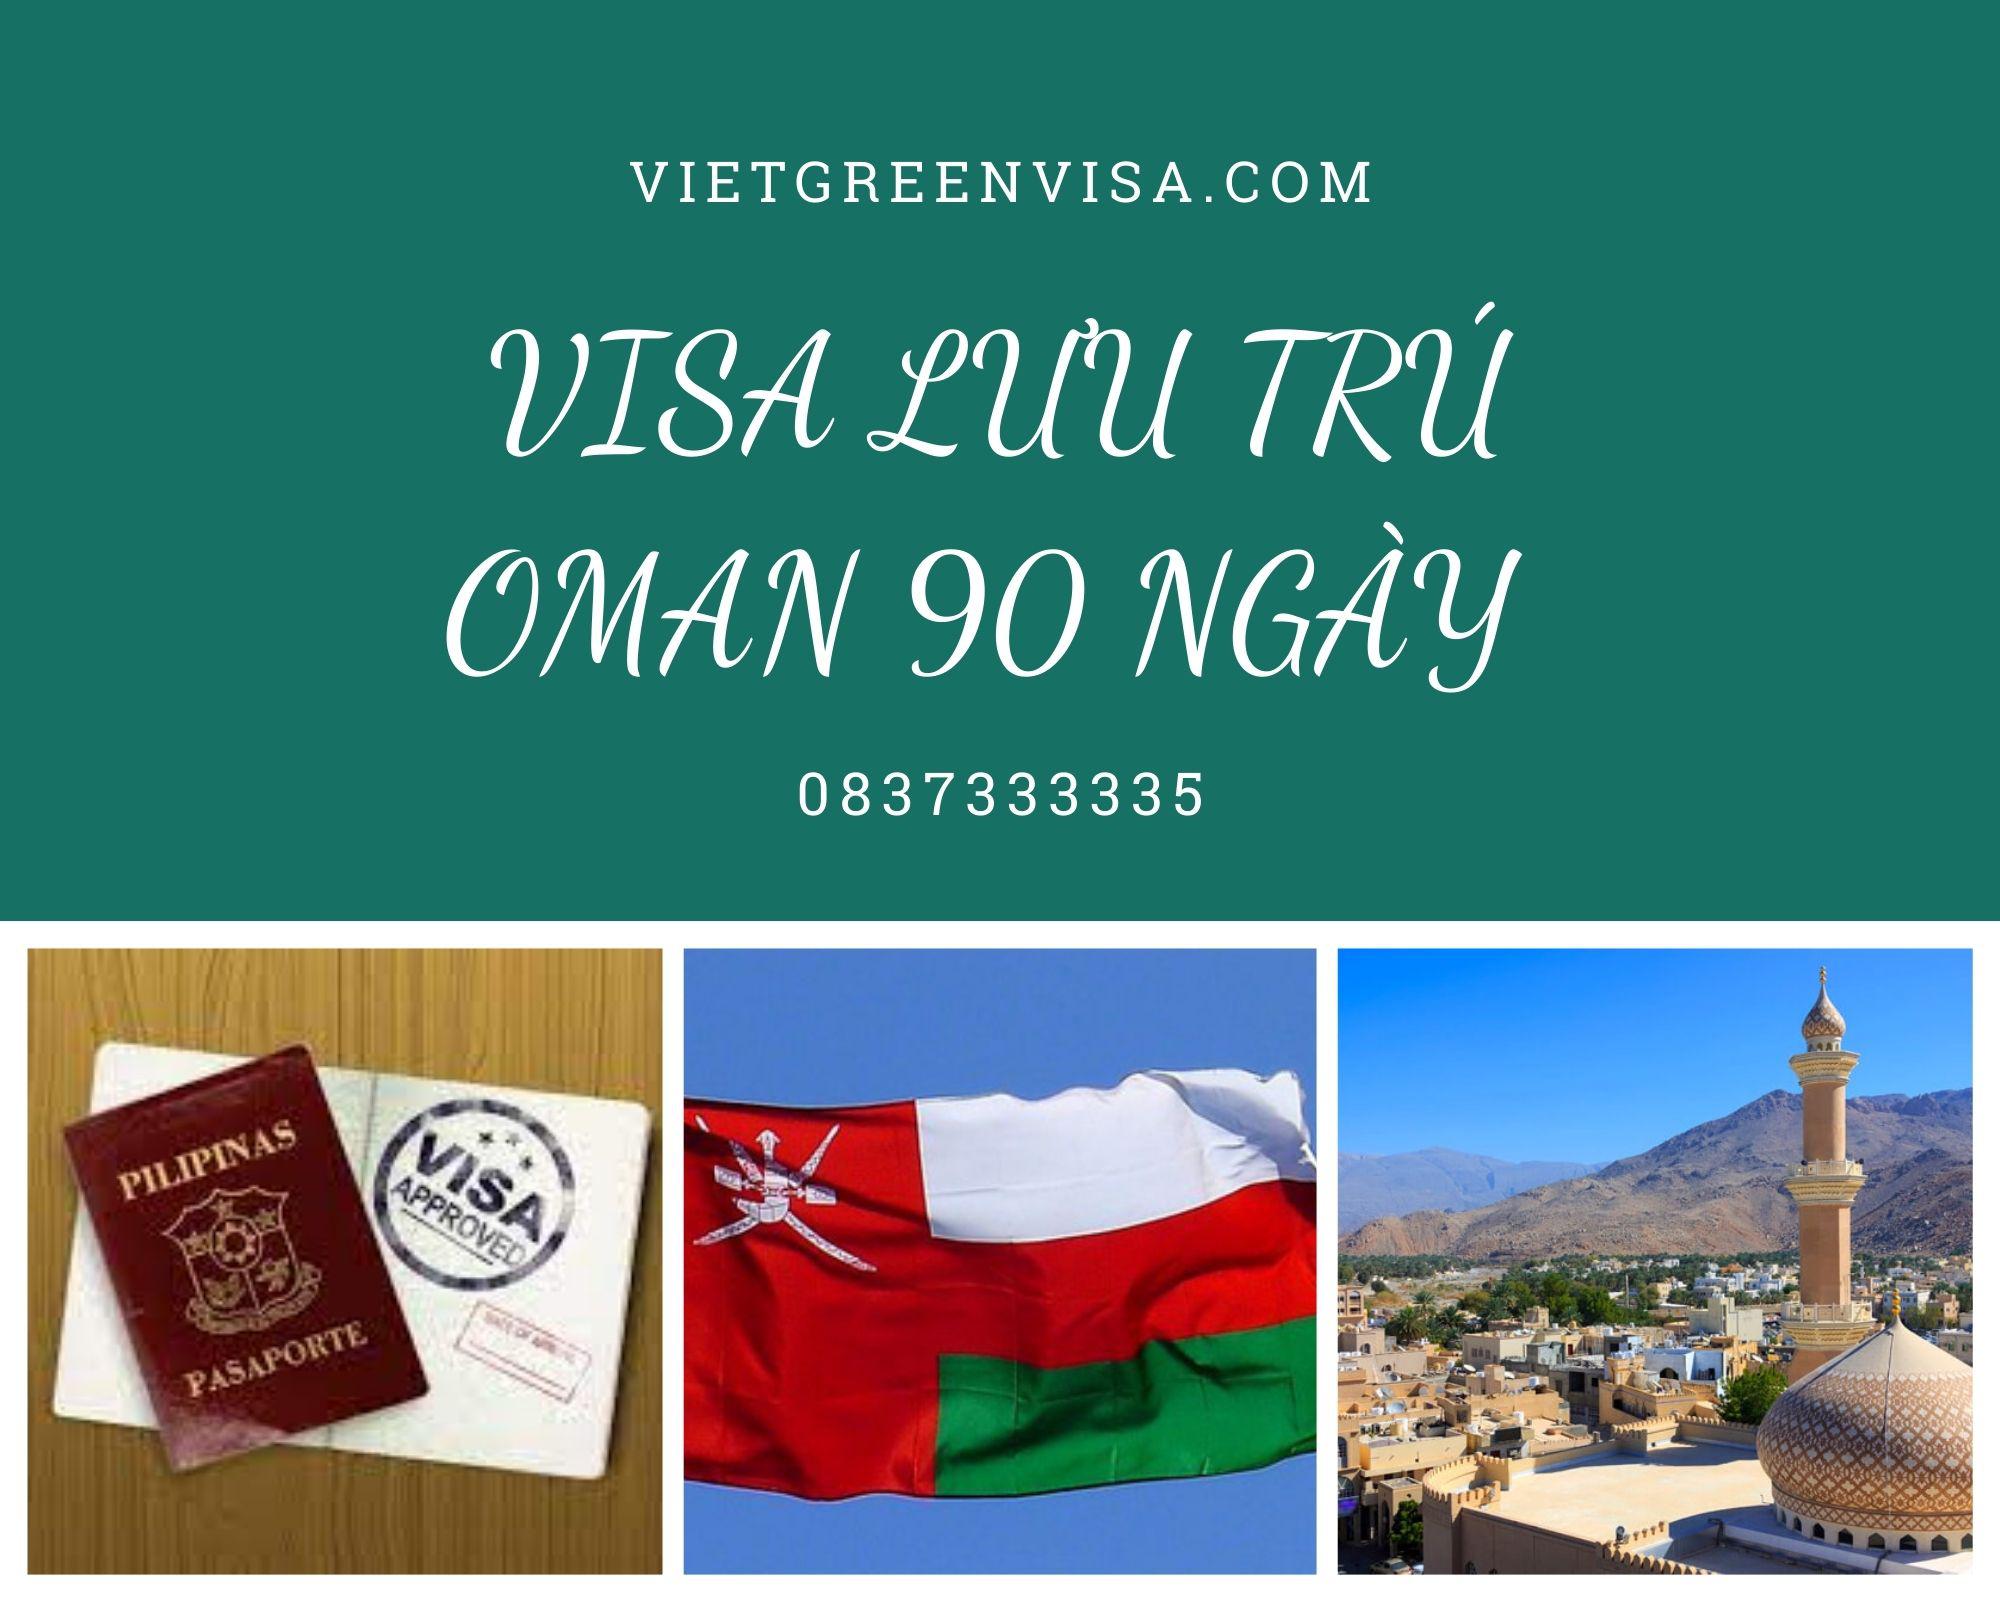 Dịch vụ làm visa Oman du lịch lưu trú 90 ngày giá rẻ